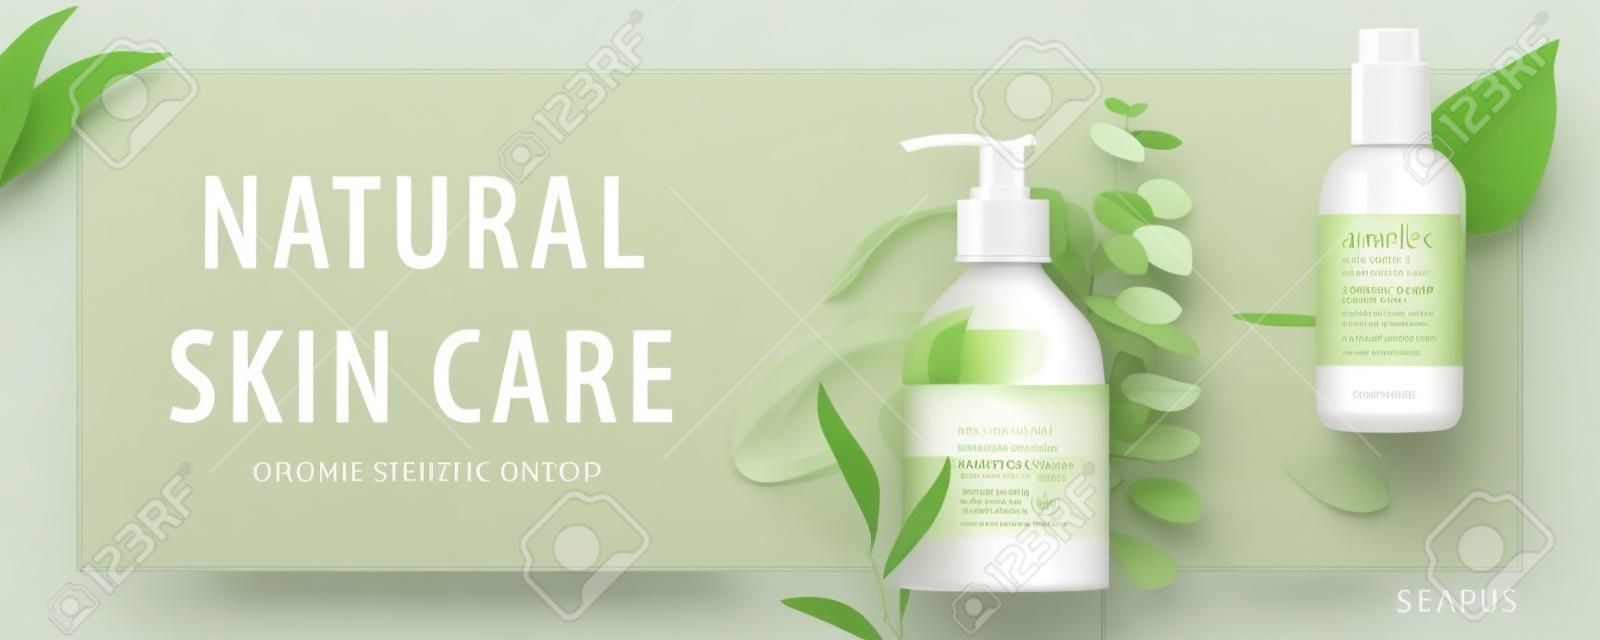 Baner reklamowy dla prostych produktów kosmetycznych, makiety ozdobione naturalnymi liśćmi i kremowymi pociągnięciami, koncepcja ekologicznej pielęgnacji skóry, ilustracja 3d